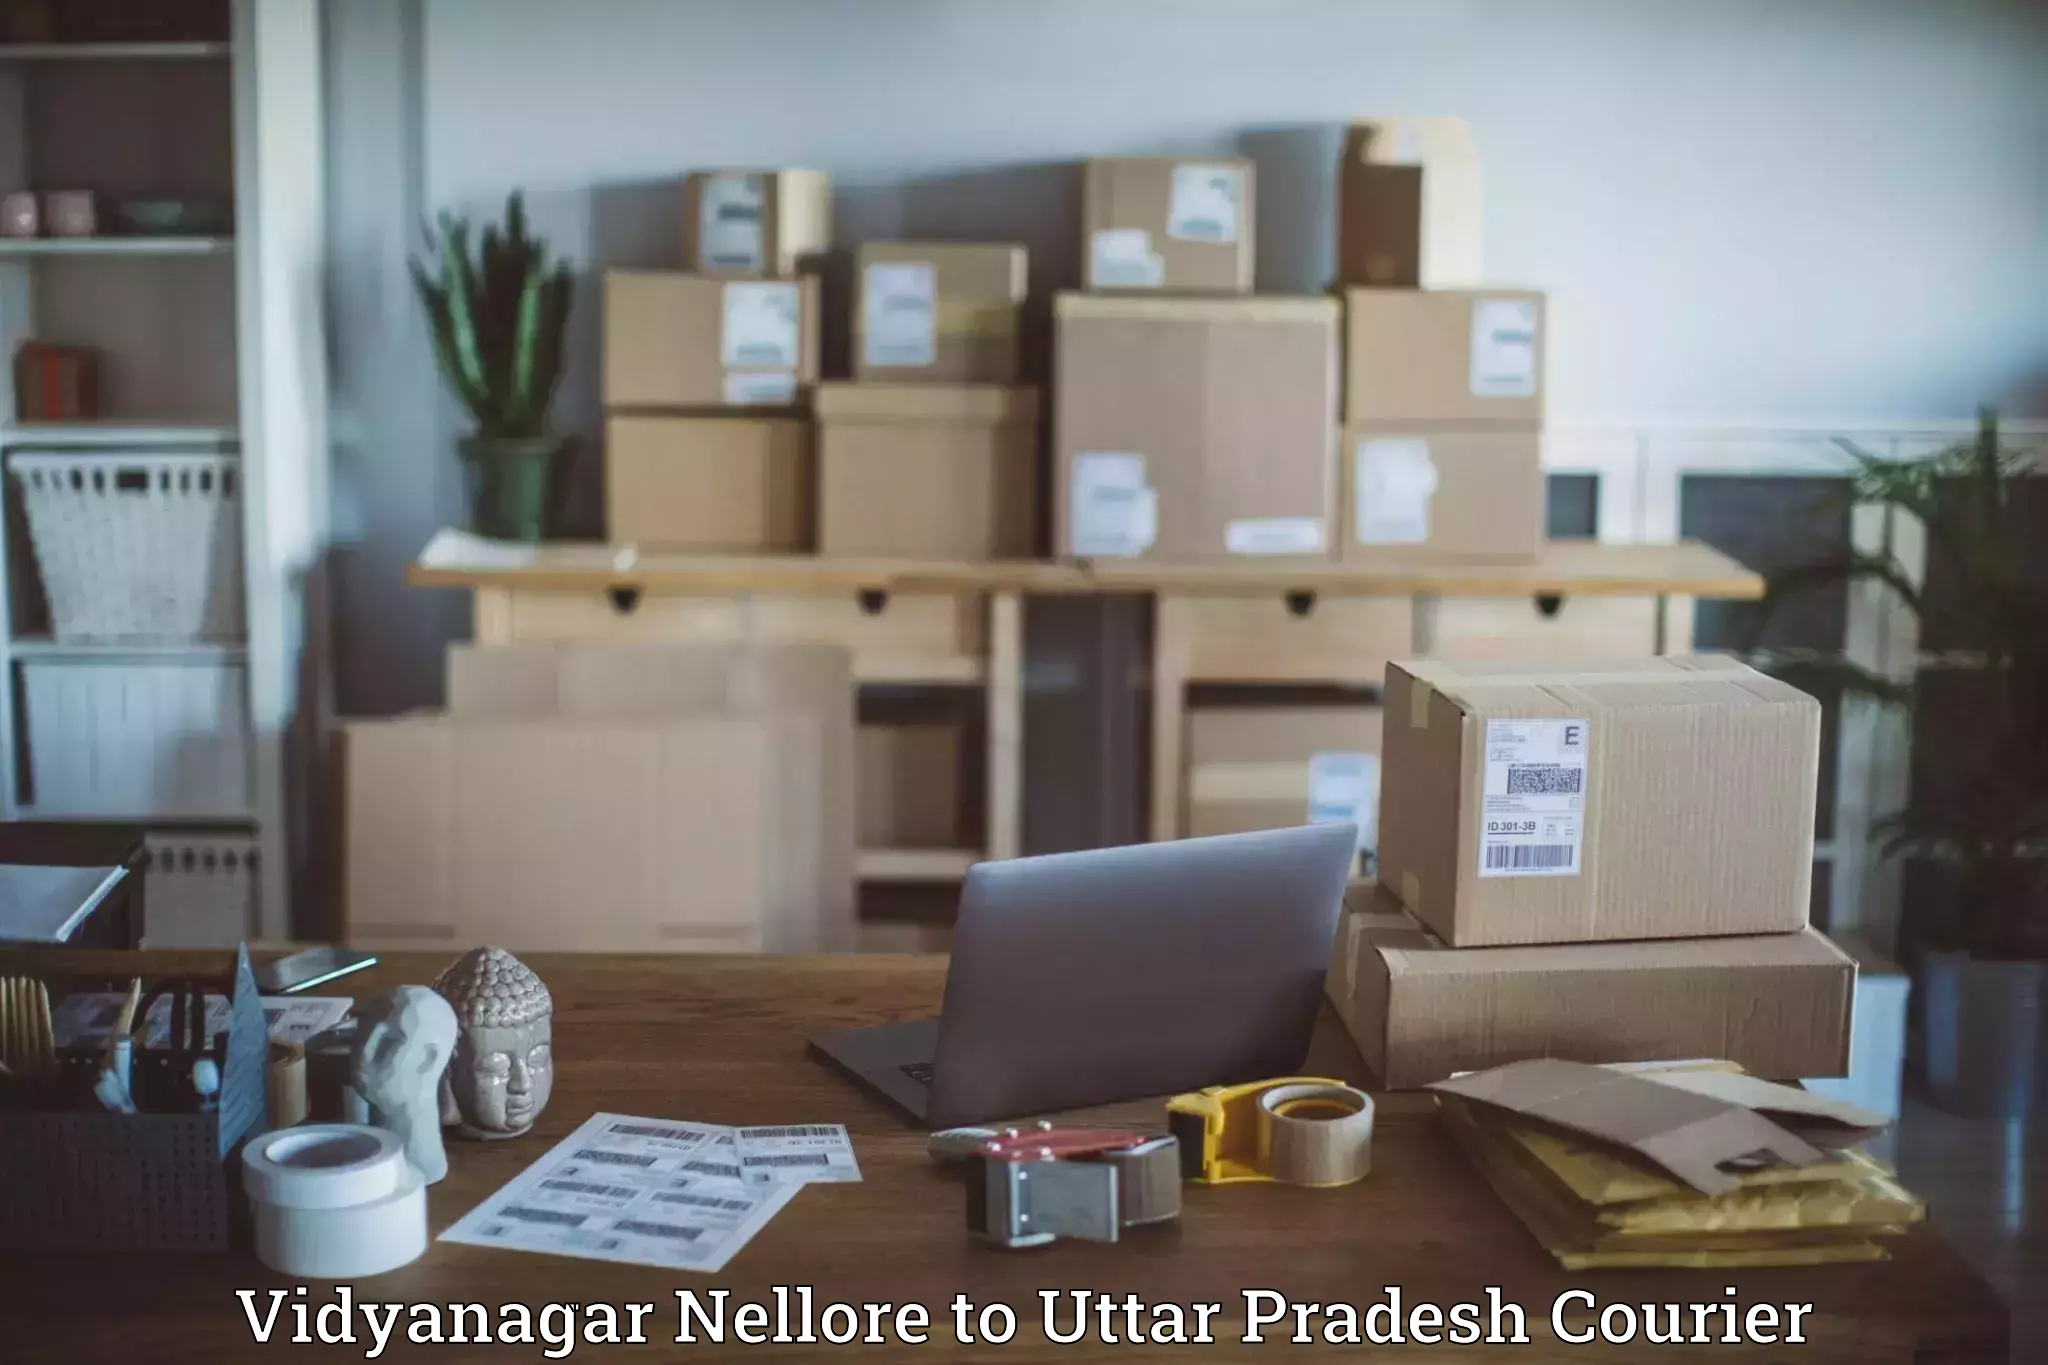 24-hour courier service in Vidyanagar Nellore to Aligarh